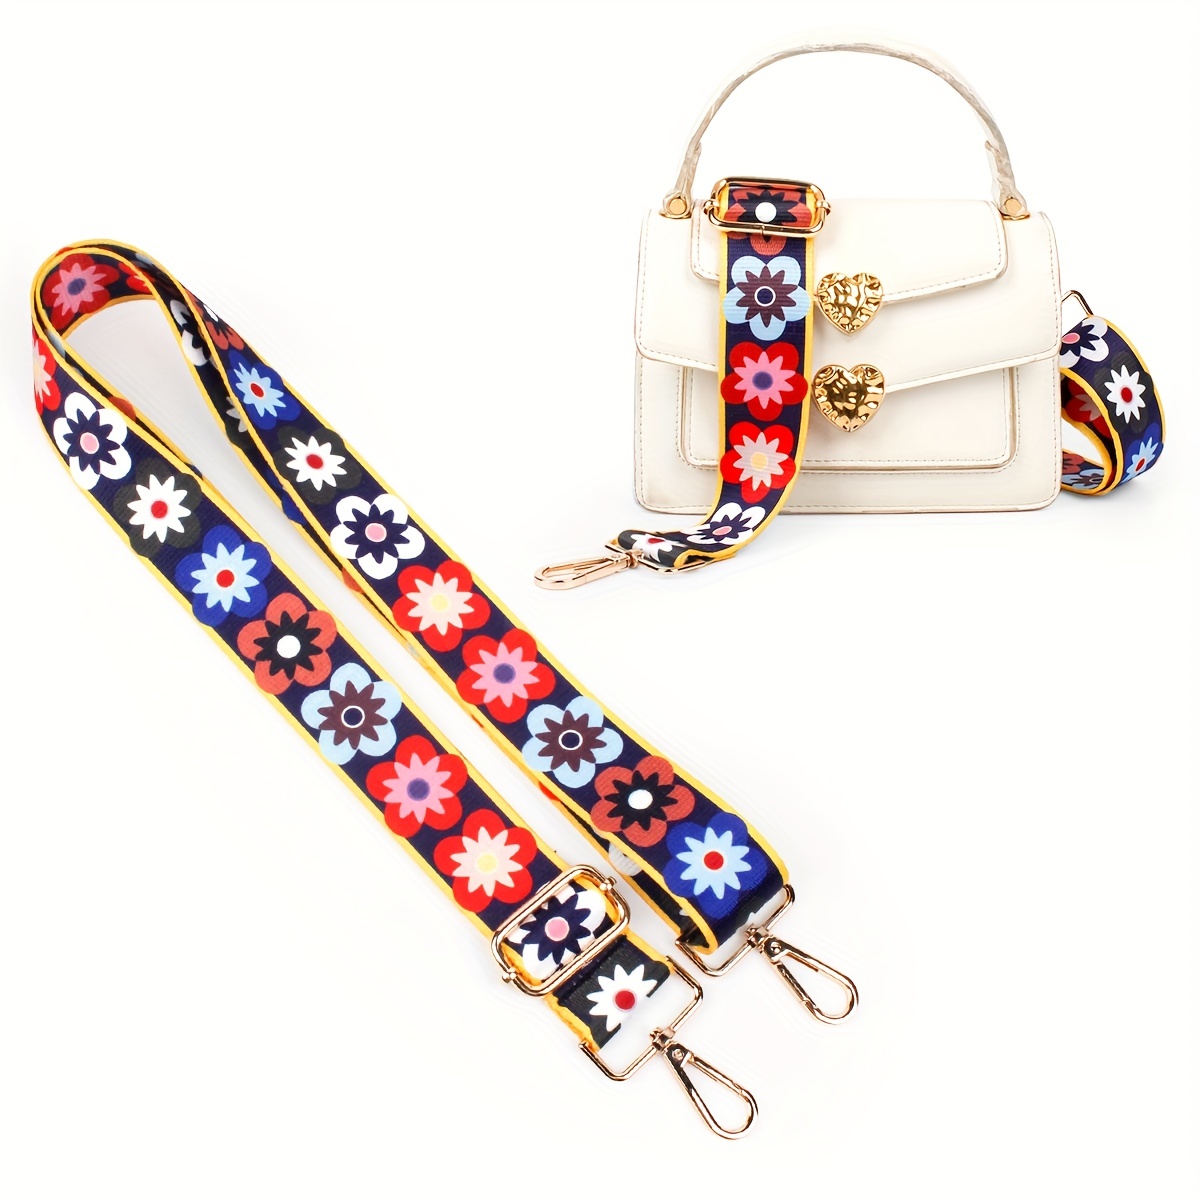 1PC Bag Strap Women Colored Straps For Crossbody Messenger Shoulder Bag  Accessories Adjustable Embroidered Belts Straps